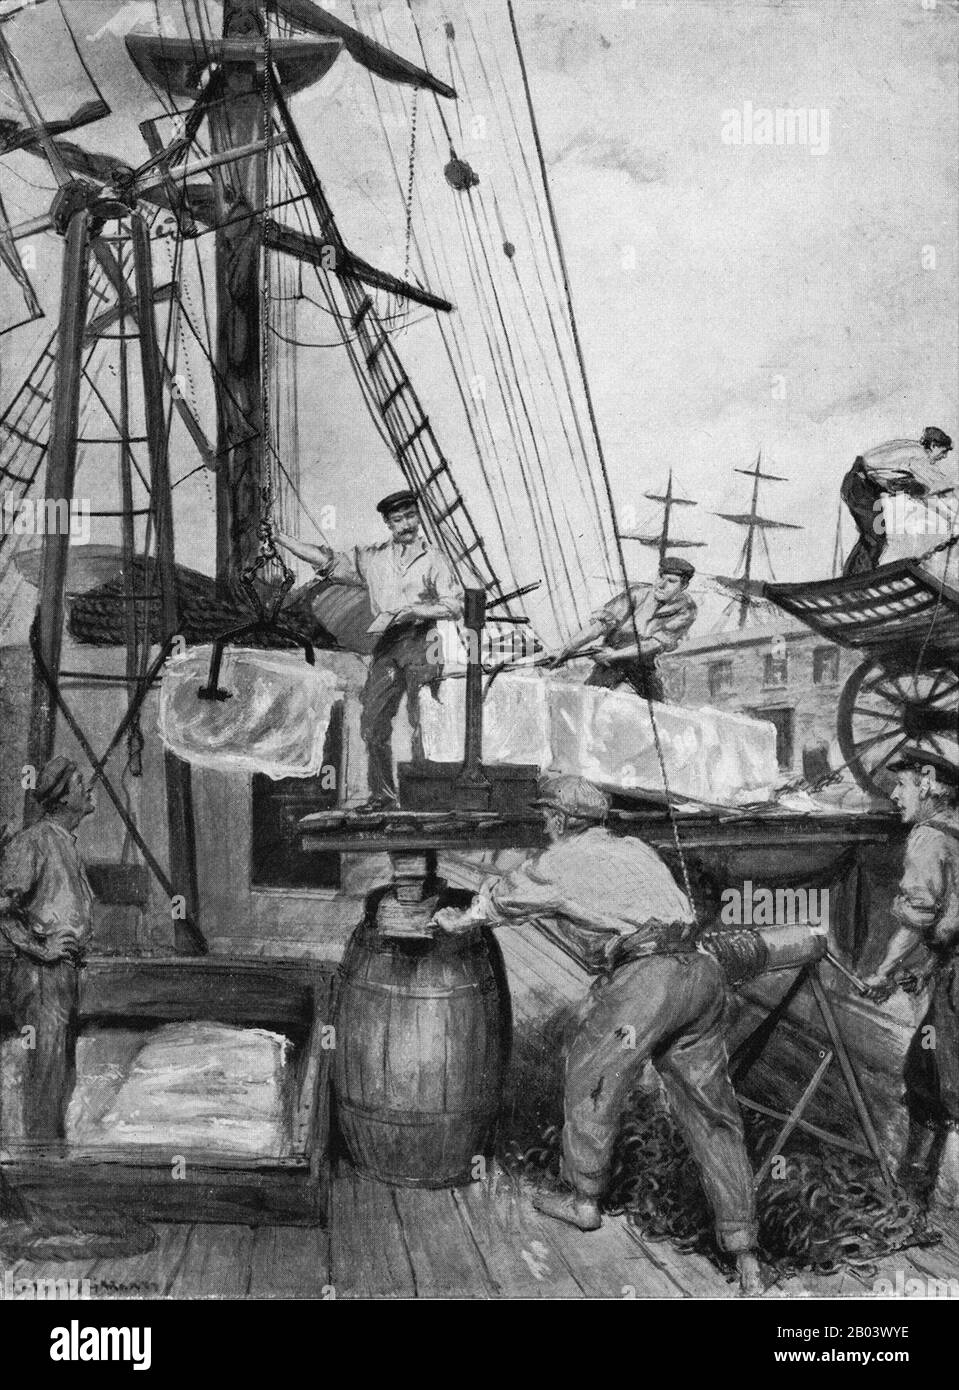 Archivillustration um 1900 eines norwegischen Schiffes, das Eisblöcke an ein Dock in London liefert. Der gefrorene Wasserhandel, einst ein bedeutender Export für die norwegische Wirtschaft, wurde Eisblöcke aus gefrorenen Seen geschnitten und in den Tagen vor der Entwicklung der Kühltechnologie weltweit exportiert Stockfoto